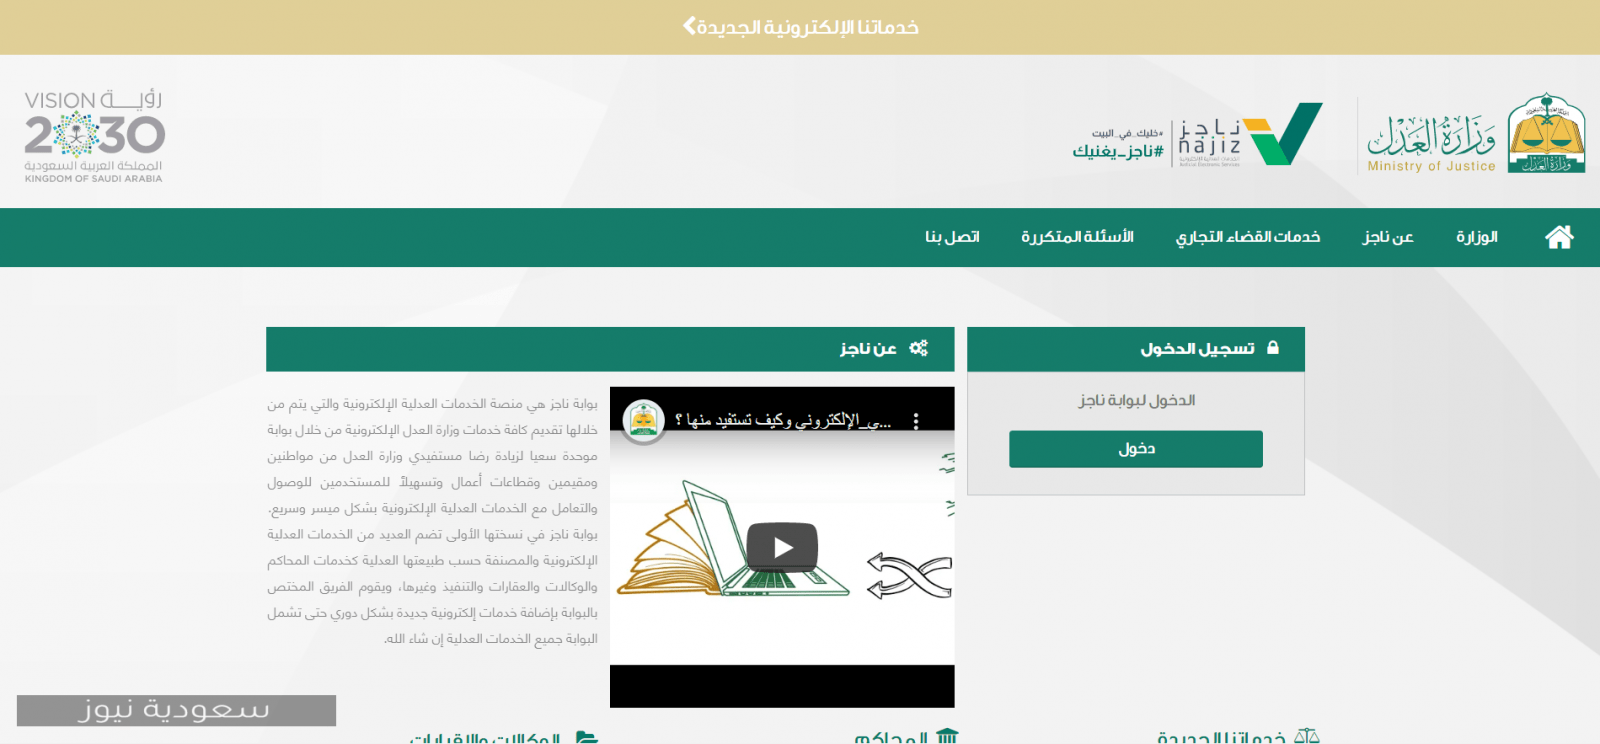 خطوات حجز موعد عبر ناجز خدمة المواعيد الإلكترونية من وزارة العدل السعودية 1442